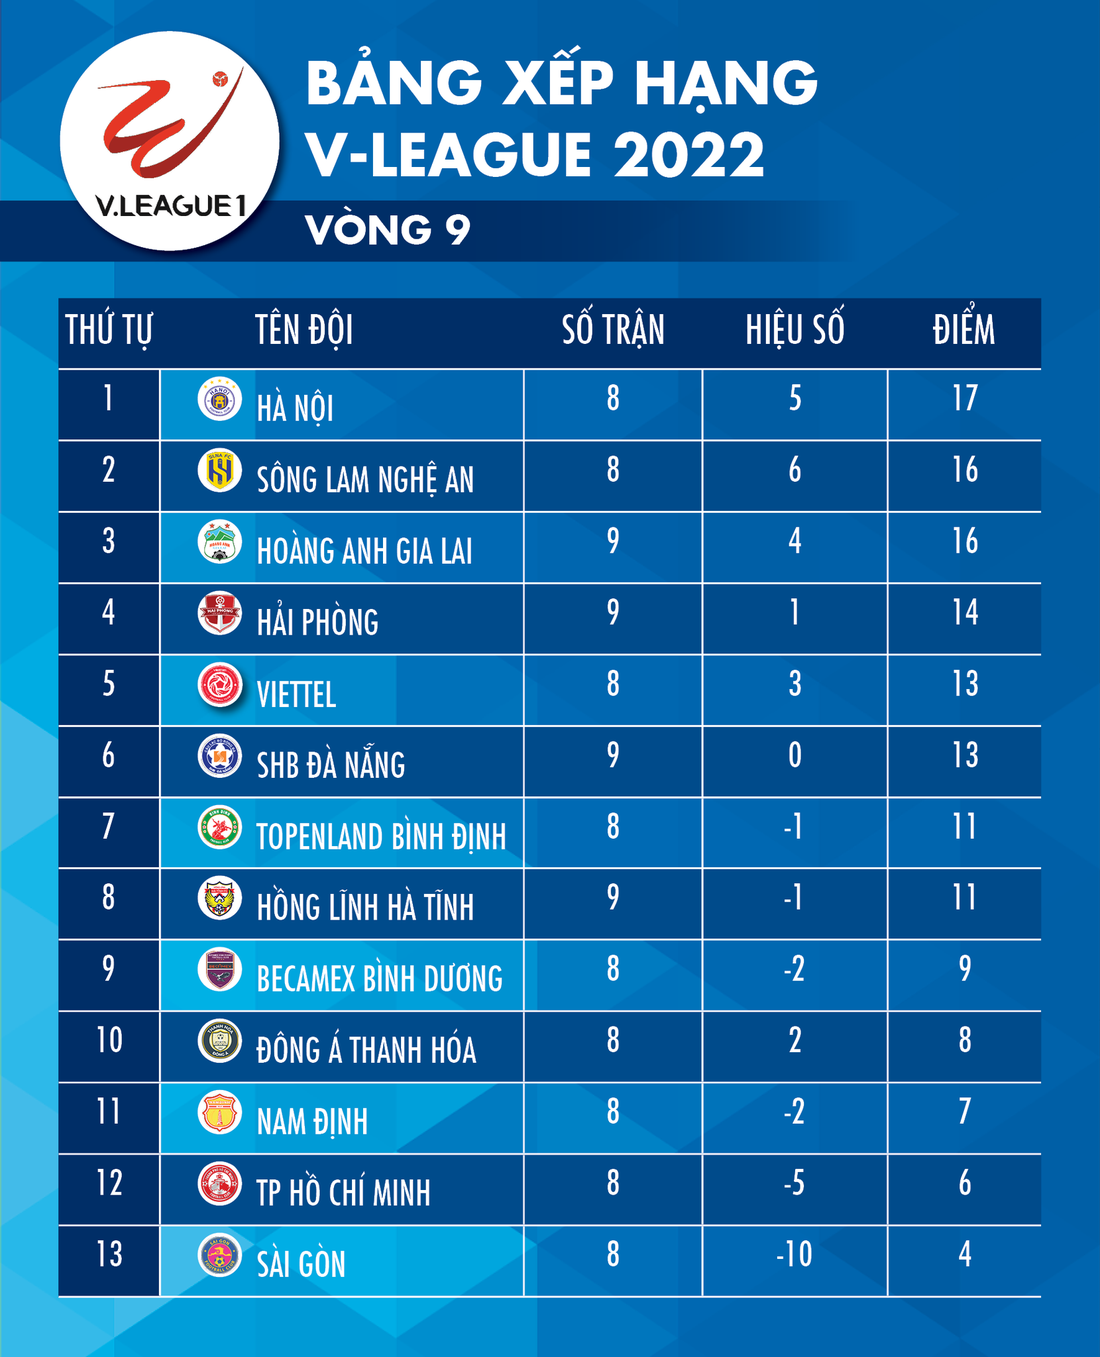 Bảng xếp hạng V-League 2022 sau vòng 9: Hà Nội nhất, SLNA và HAGL đứng sau - Ảnh 1.